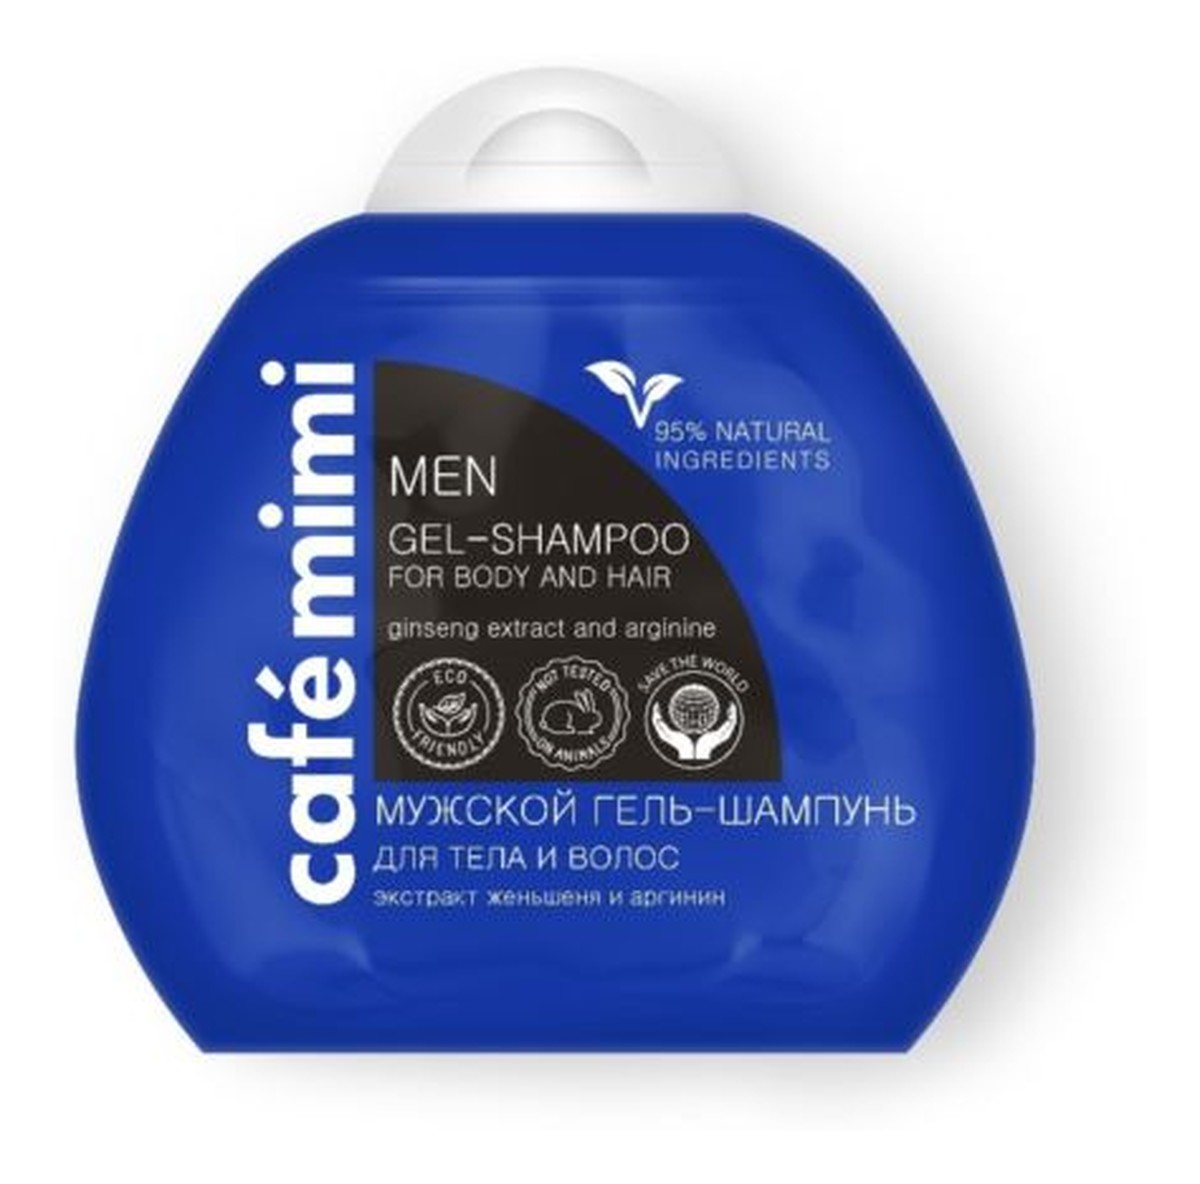 Żel - szampon do ciała i włosów dla mężczyzn - ekstrakt żeń szenia, arganina, D-panthenol, - 95% składników naturalnych